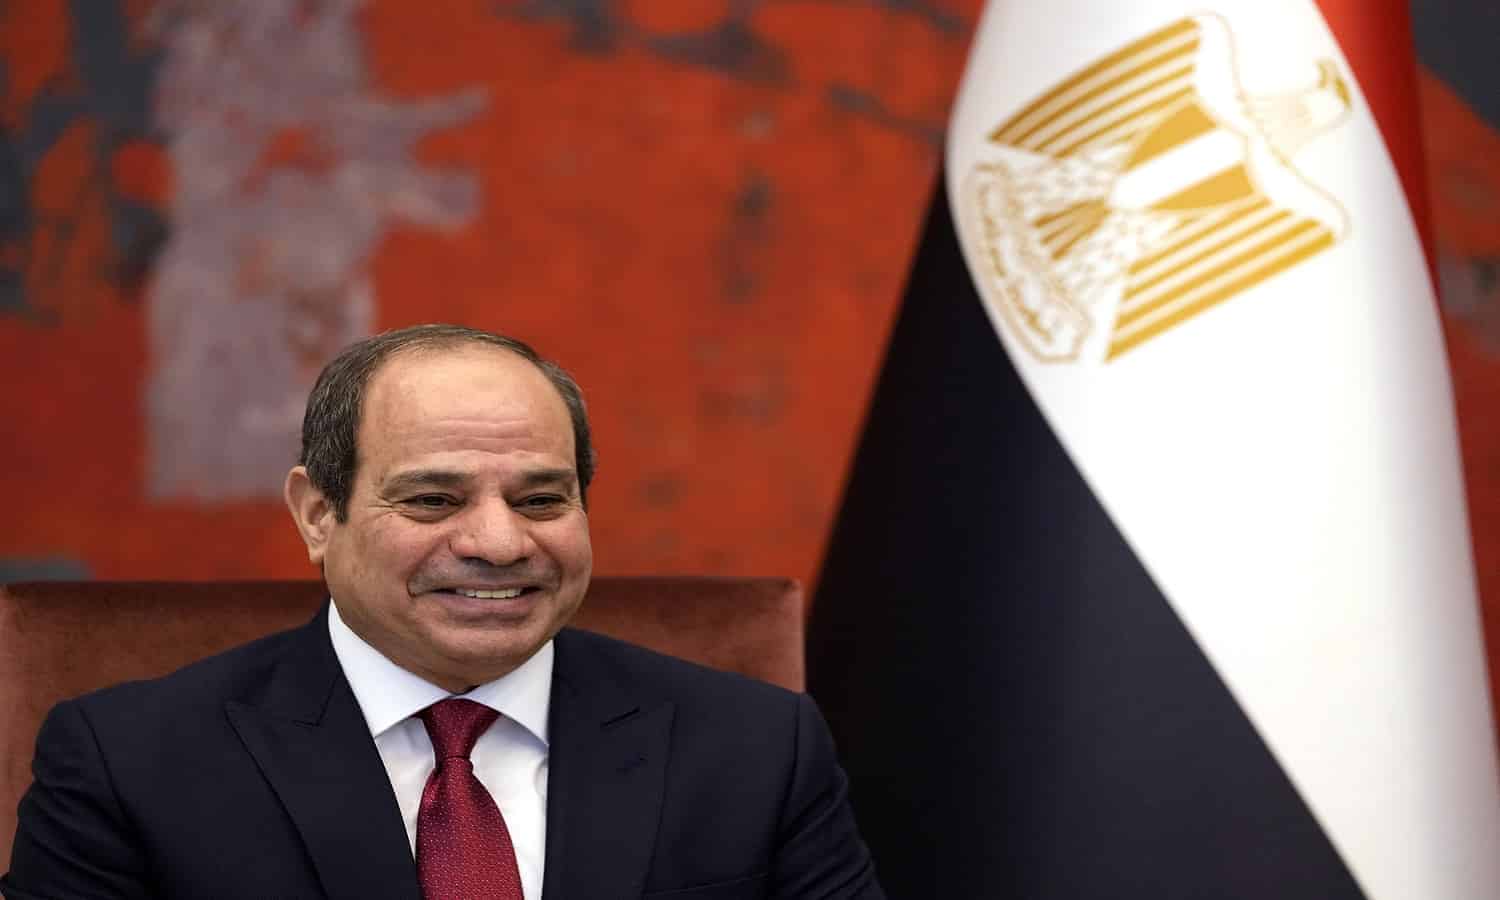 قرار جمهوري للتعاون بين مصر وأمريكا في الحوكمة الاقتصادية الشاملة
